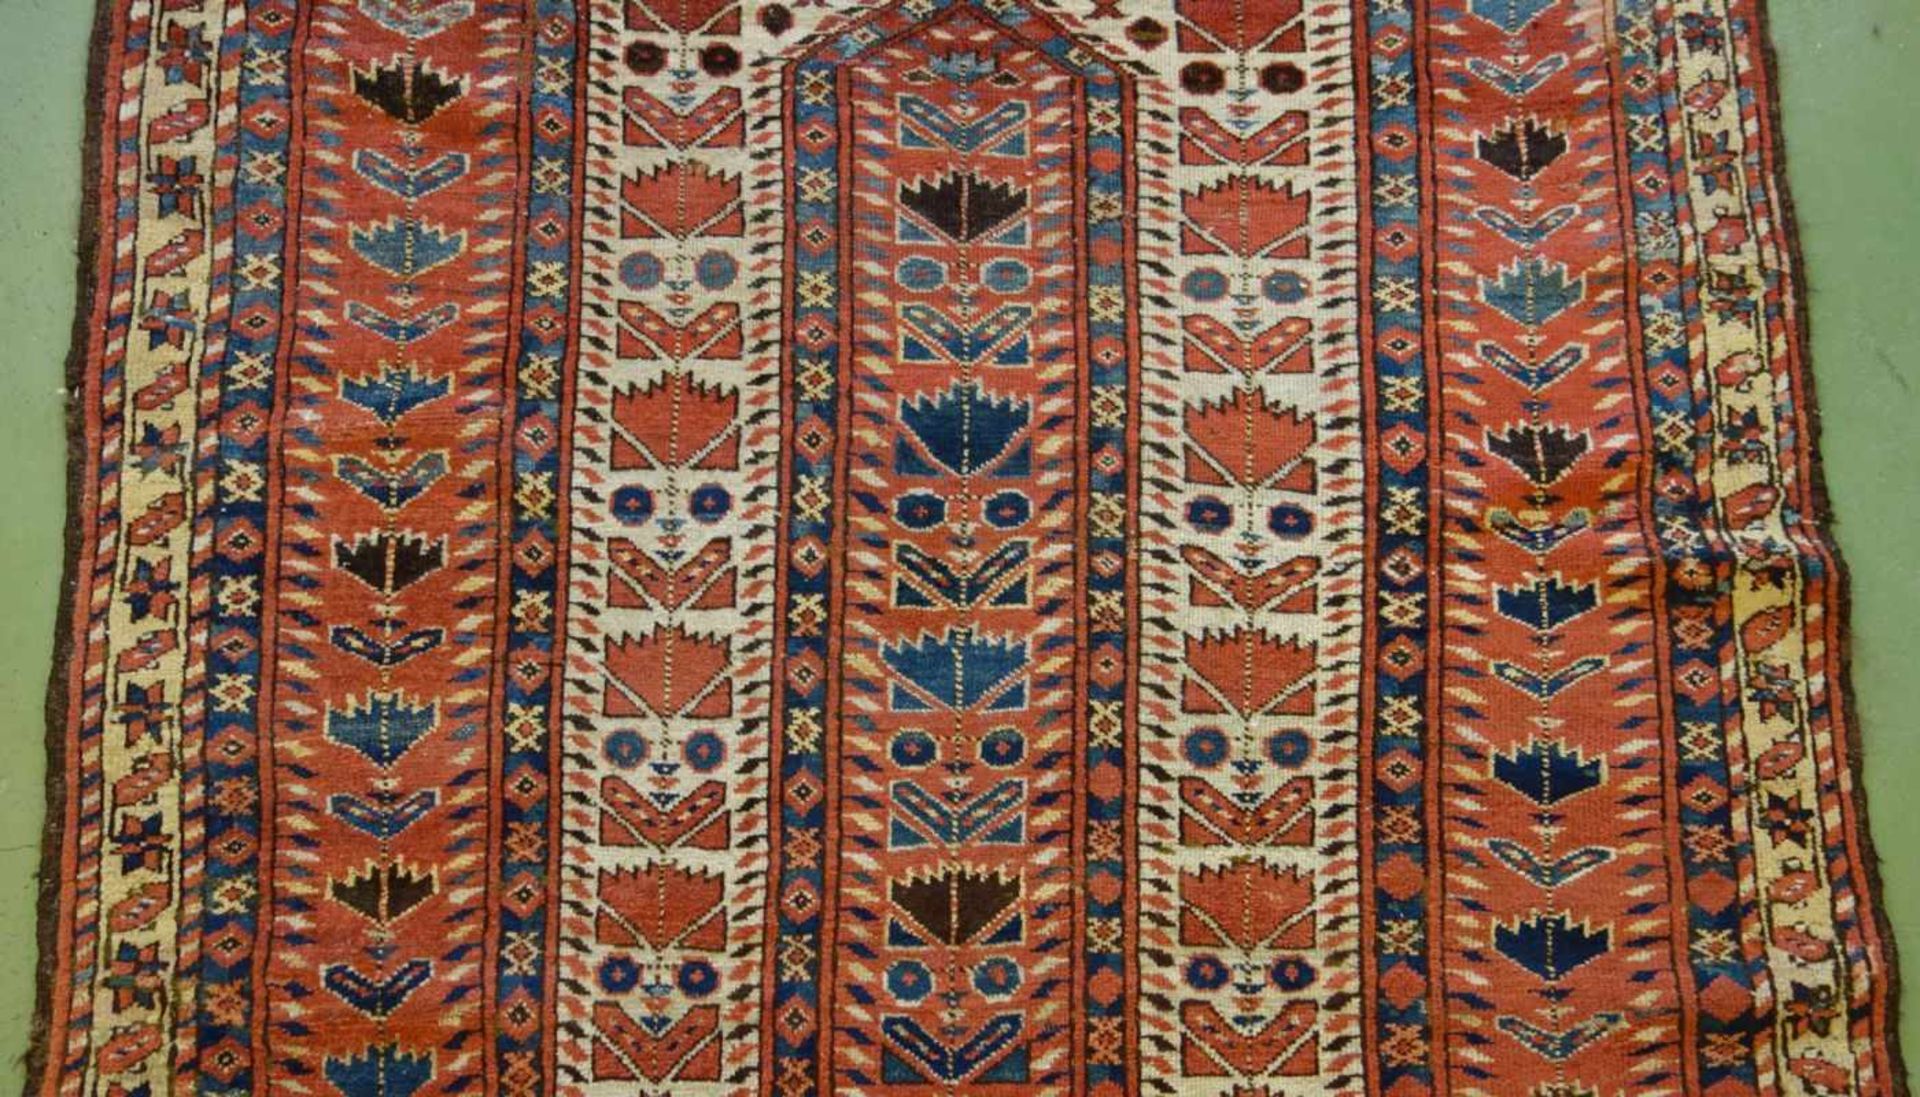 SCHMALER BESCHIR GEBETSTEPPICH / prayer rug, wohl 2. H. 19. Jh., Turkmenistan / Ersari-Beschir ( - Bild 23 aus 24